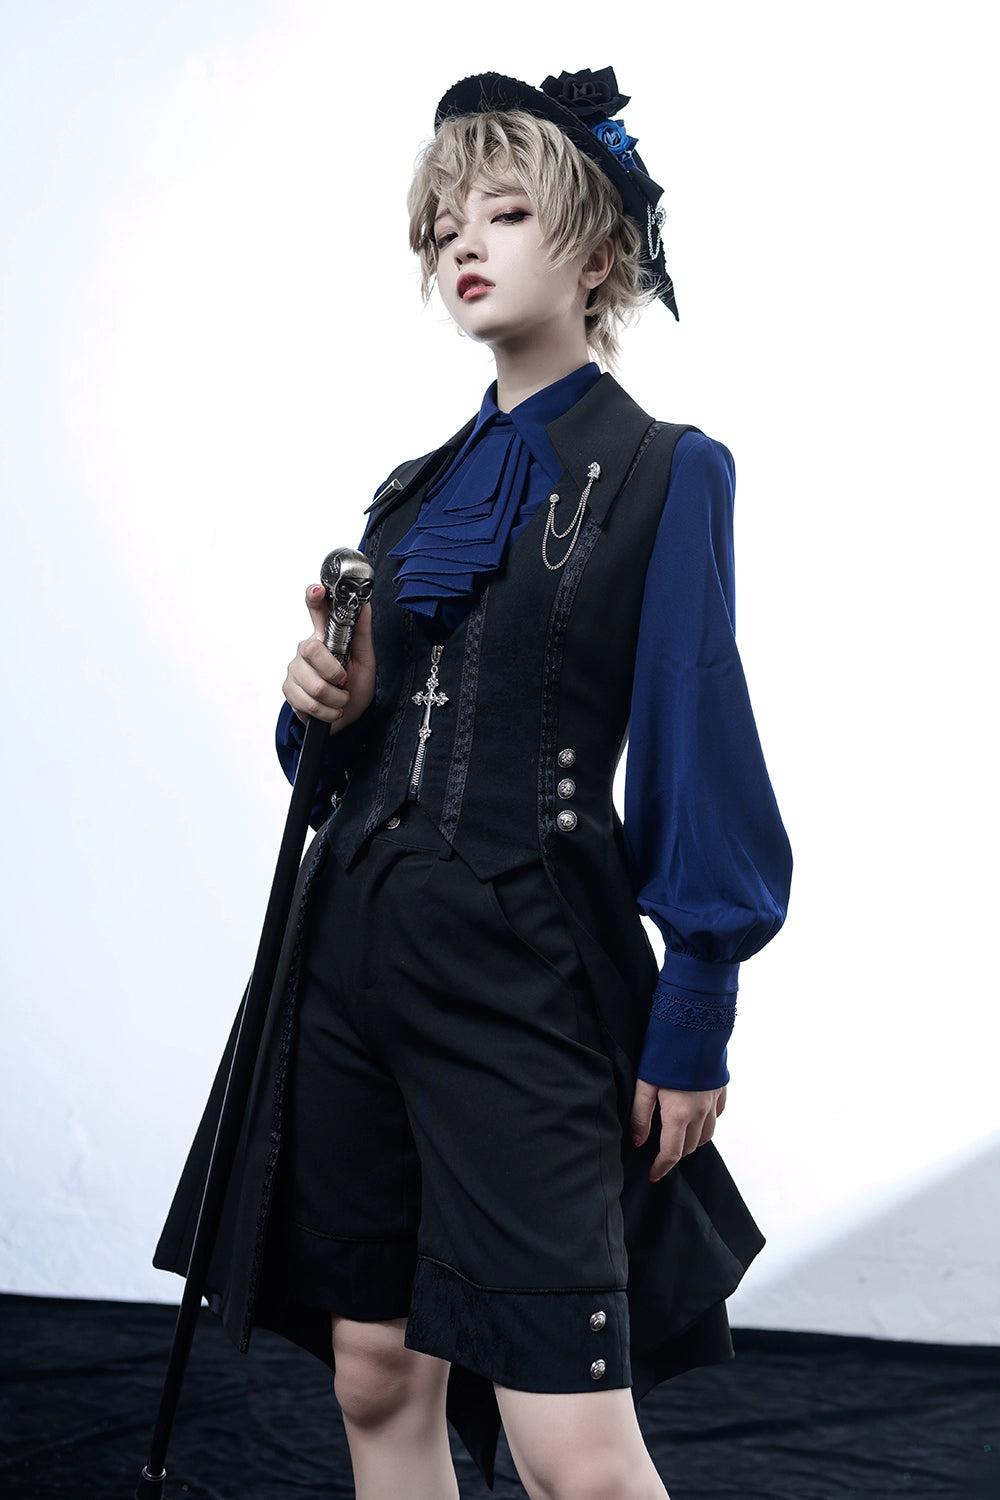 ゴシックスタイルの衣装を着たモデル、ブルーのブラウスにブラックのジャケットとショートパンツ、帽子と杖をアクセサリーに